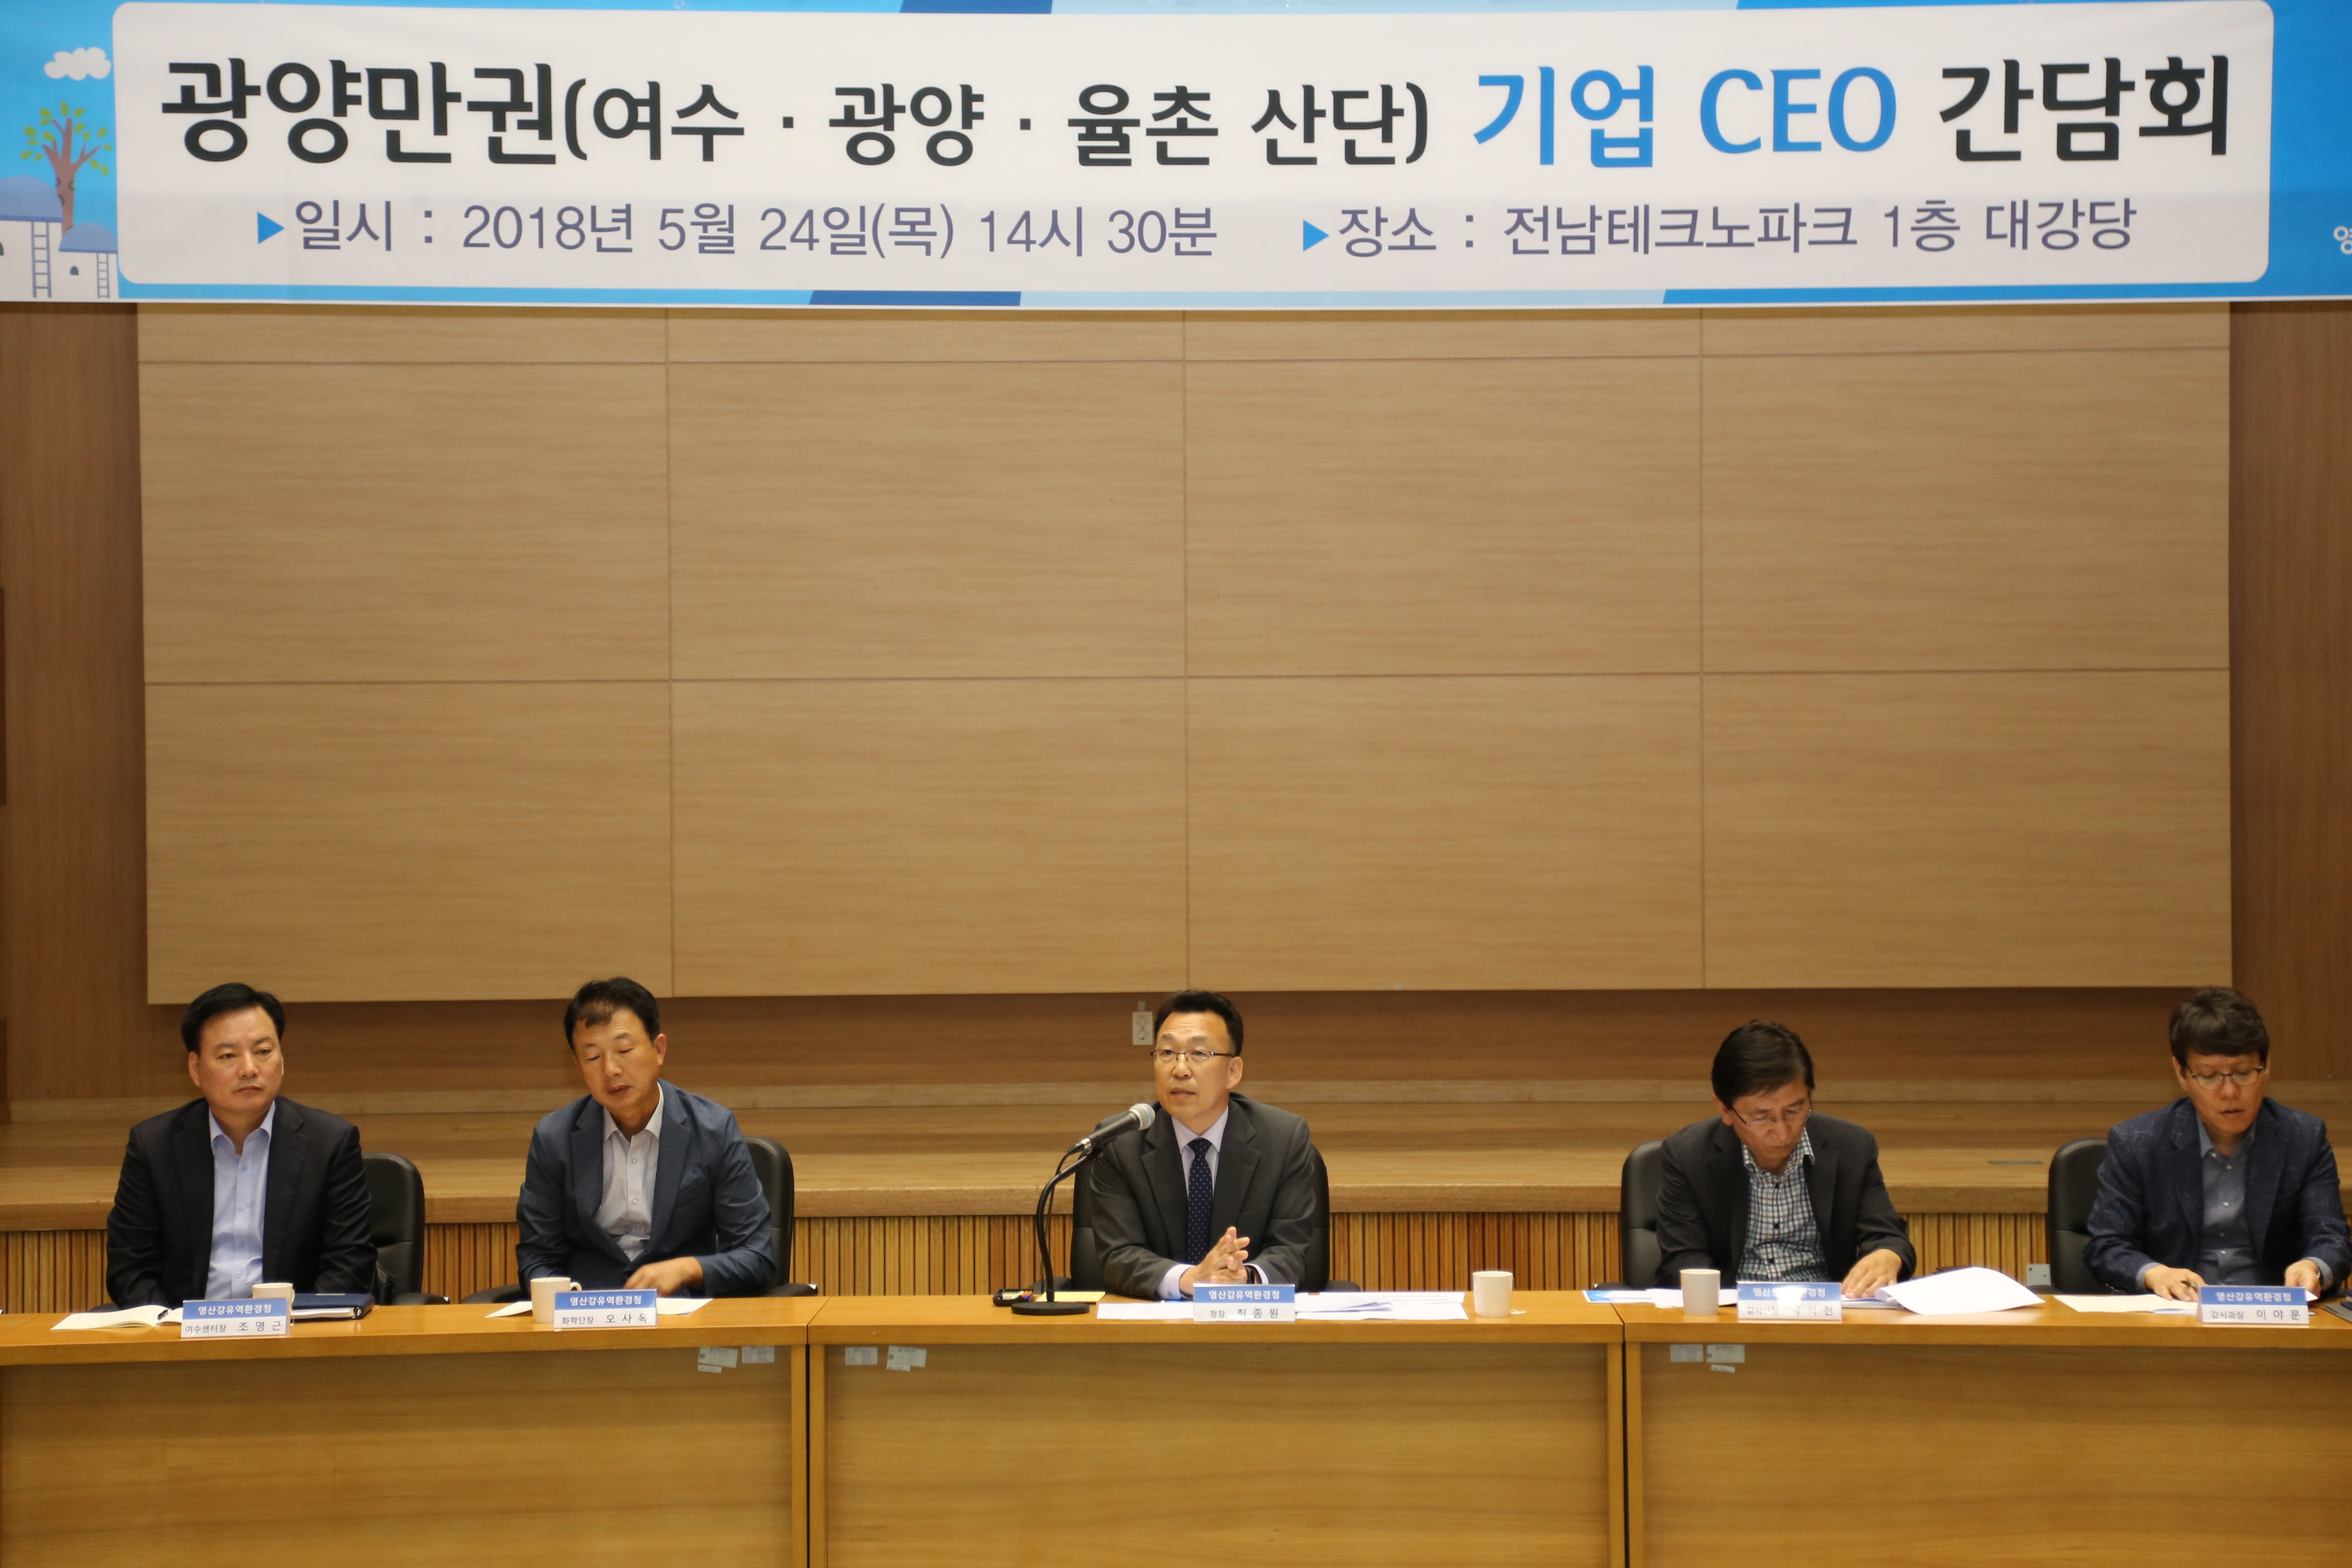 「광양만권(여수ㆍ광양ㆍ율촌 산단)기업 CEO 간담회」개최 큰이미지